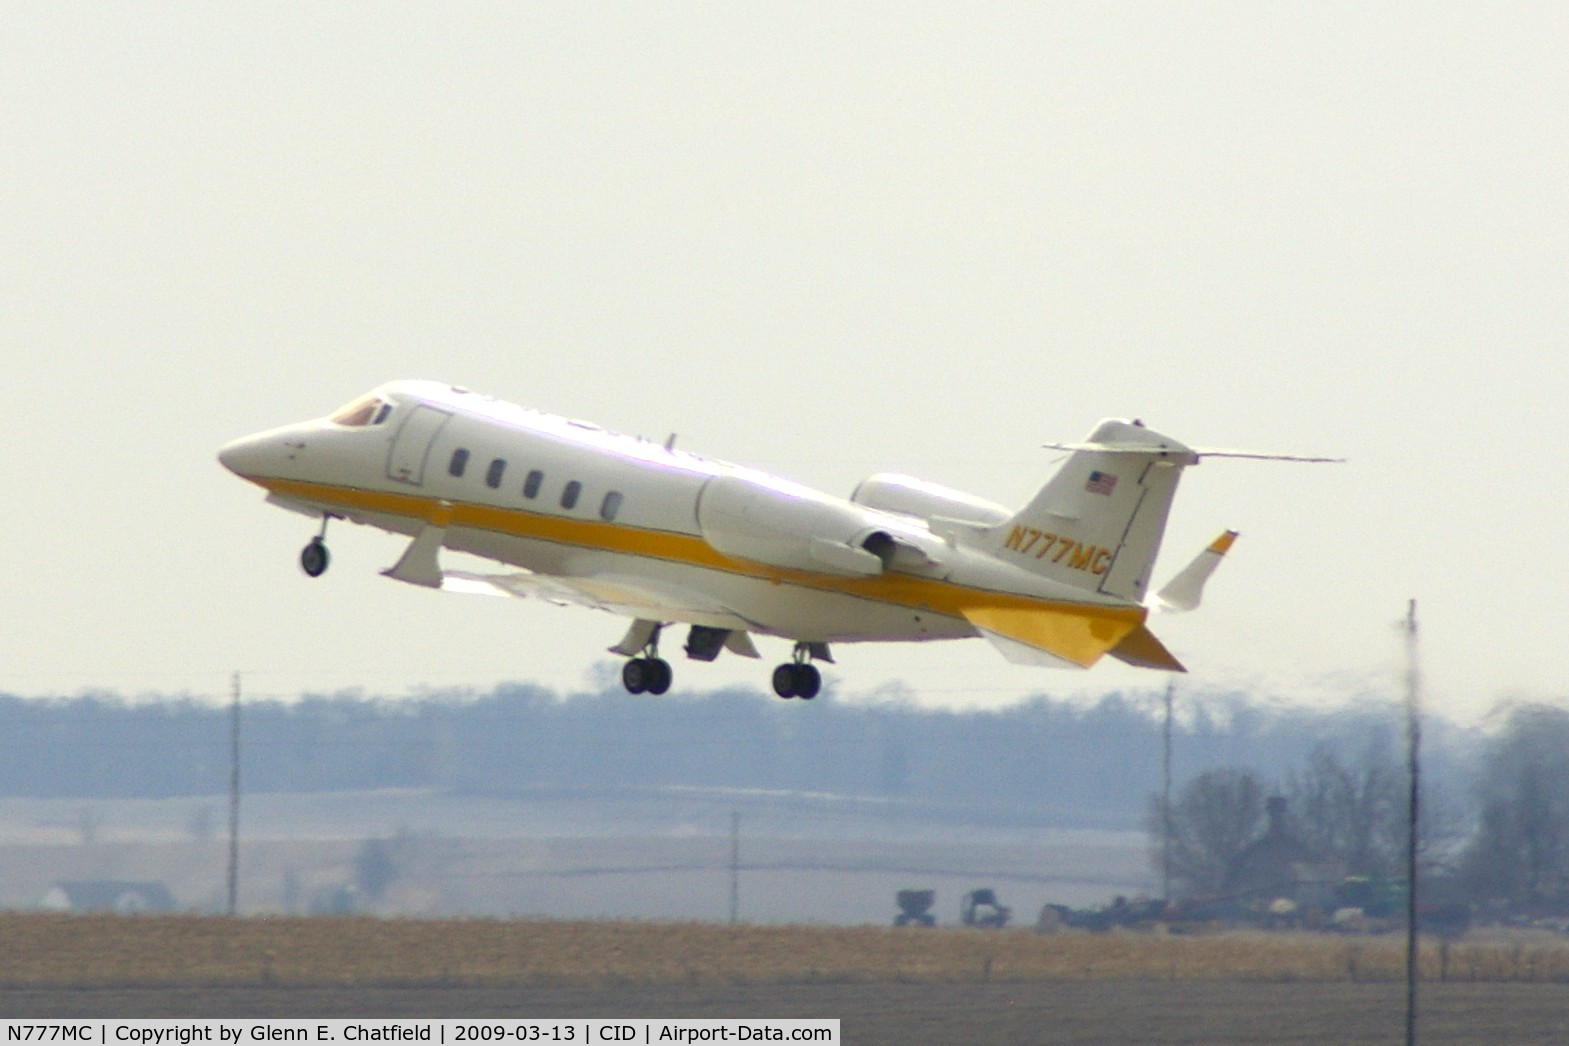 N777MC, 2000 Learjet Inc 60 C/N 180, Departing runway 13